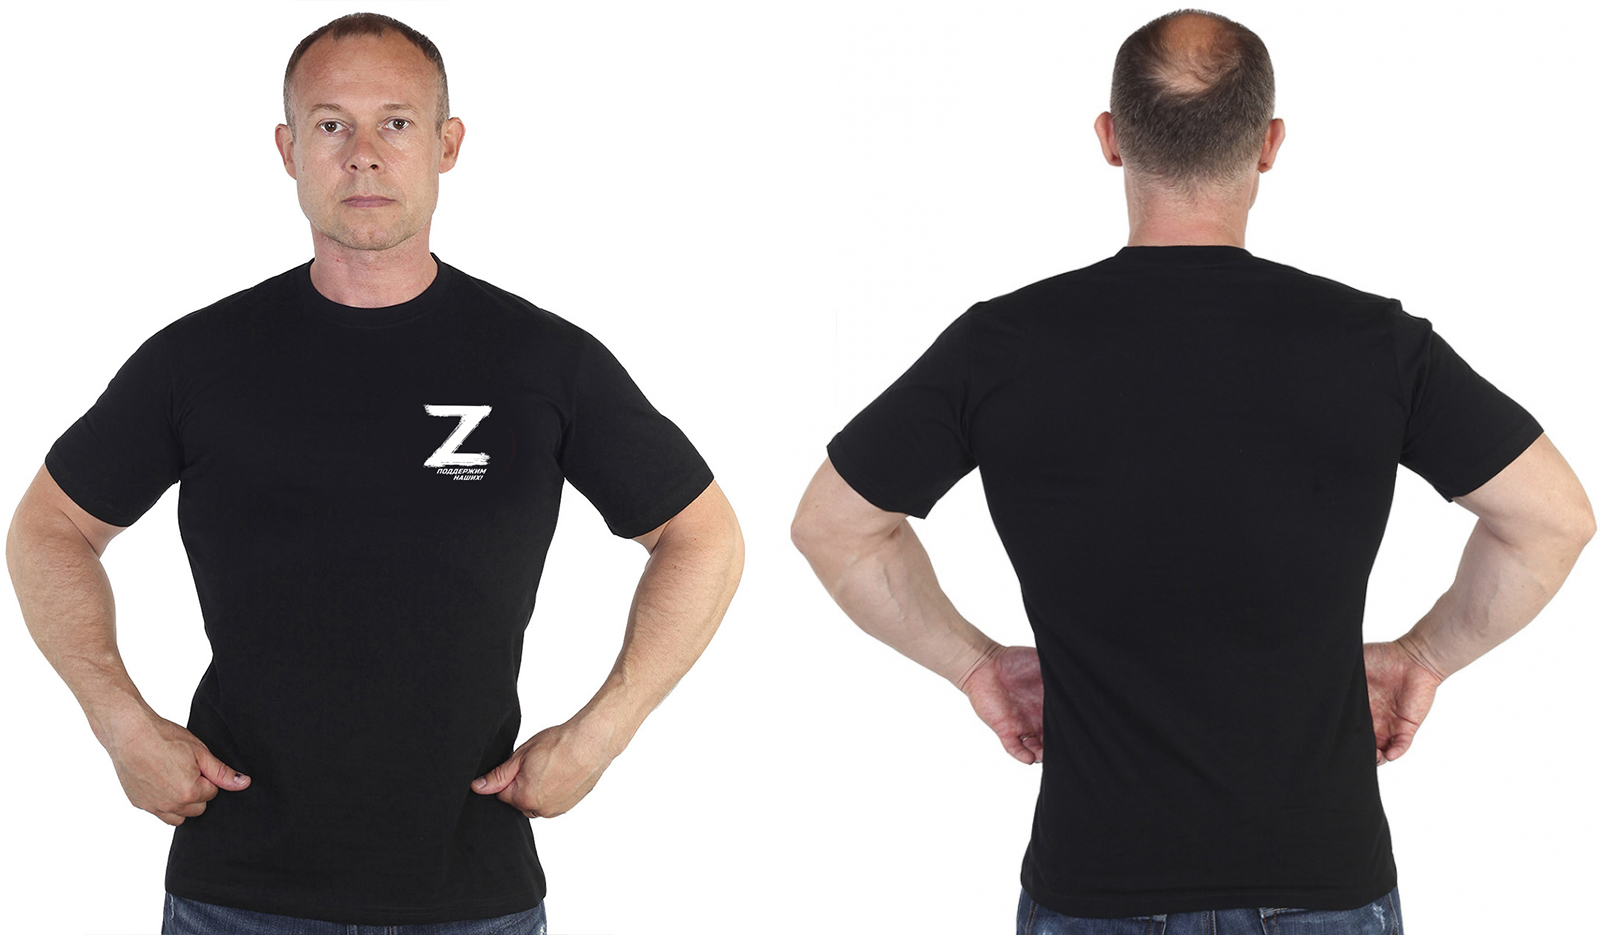 Купить футболку для мужчины с буквой Z